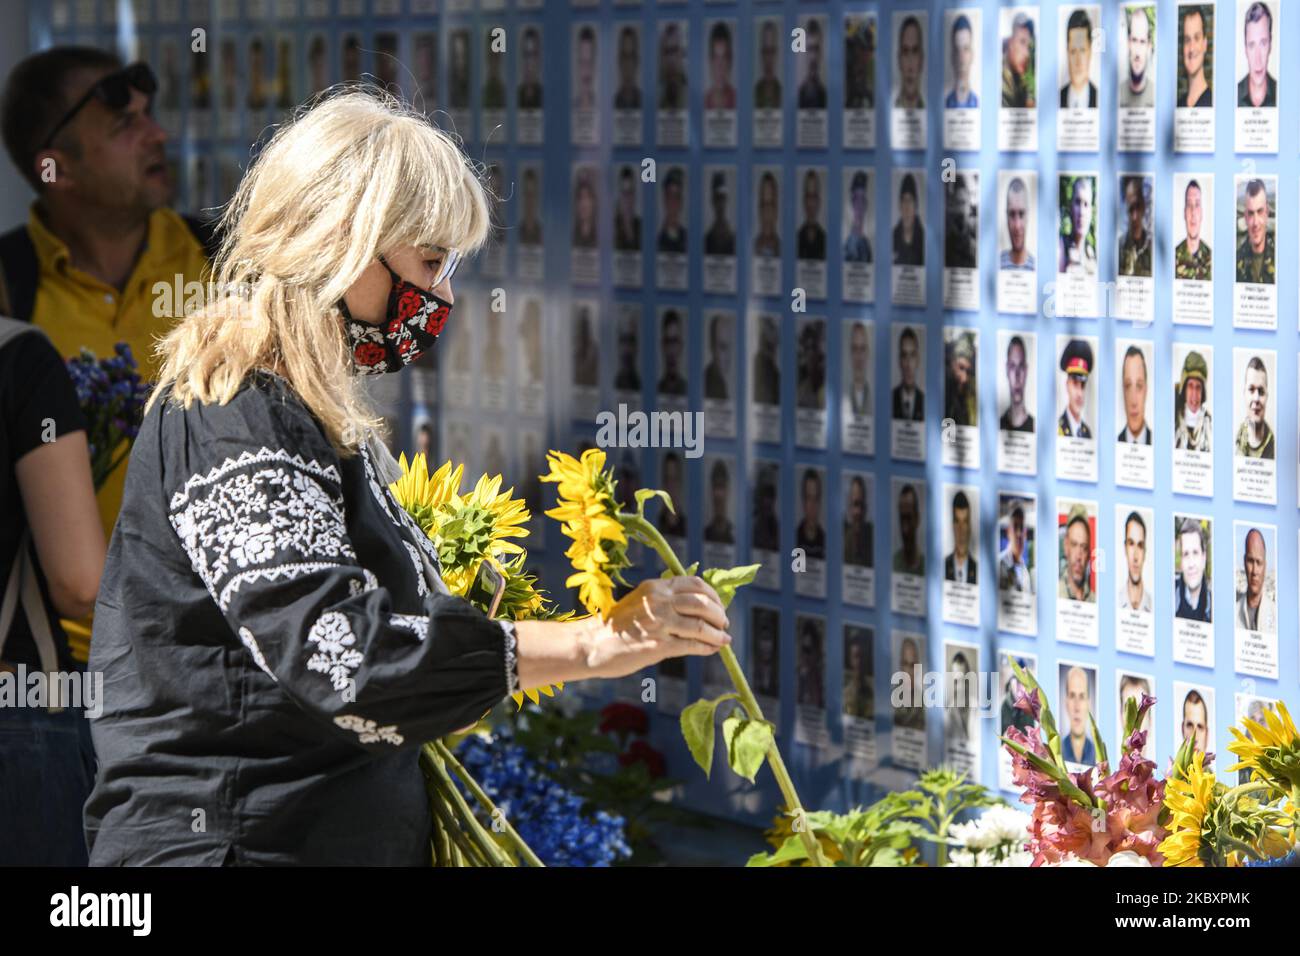 Ukrainer legen Blumen an die Gedenkmauer der gefallenen Verteidiger der Ukraine im Krieg in der Ostukraine 2014-2020 während einer Gedenkfeier zum Gedenktag der gefallenen Verteidiger der Ukraine in Kiew, Ukraine, 29. August 2020. (Foto von Maxym Marusenko/NurPhoto) Stockfoto